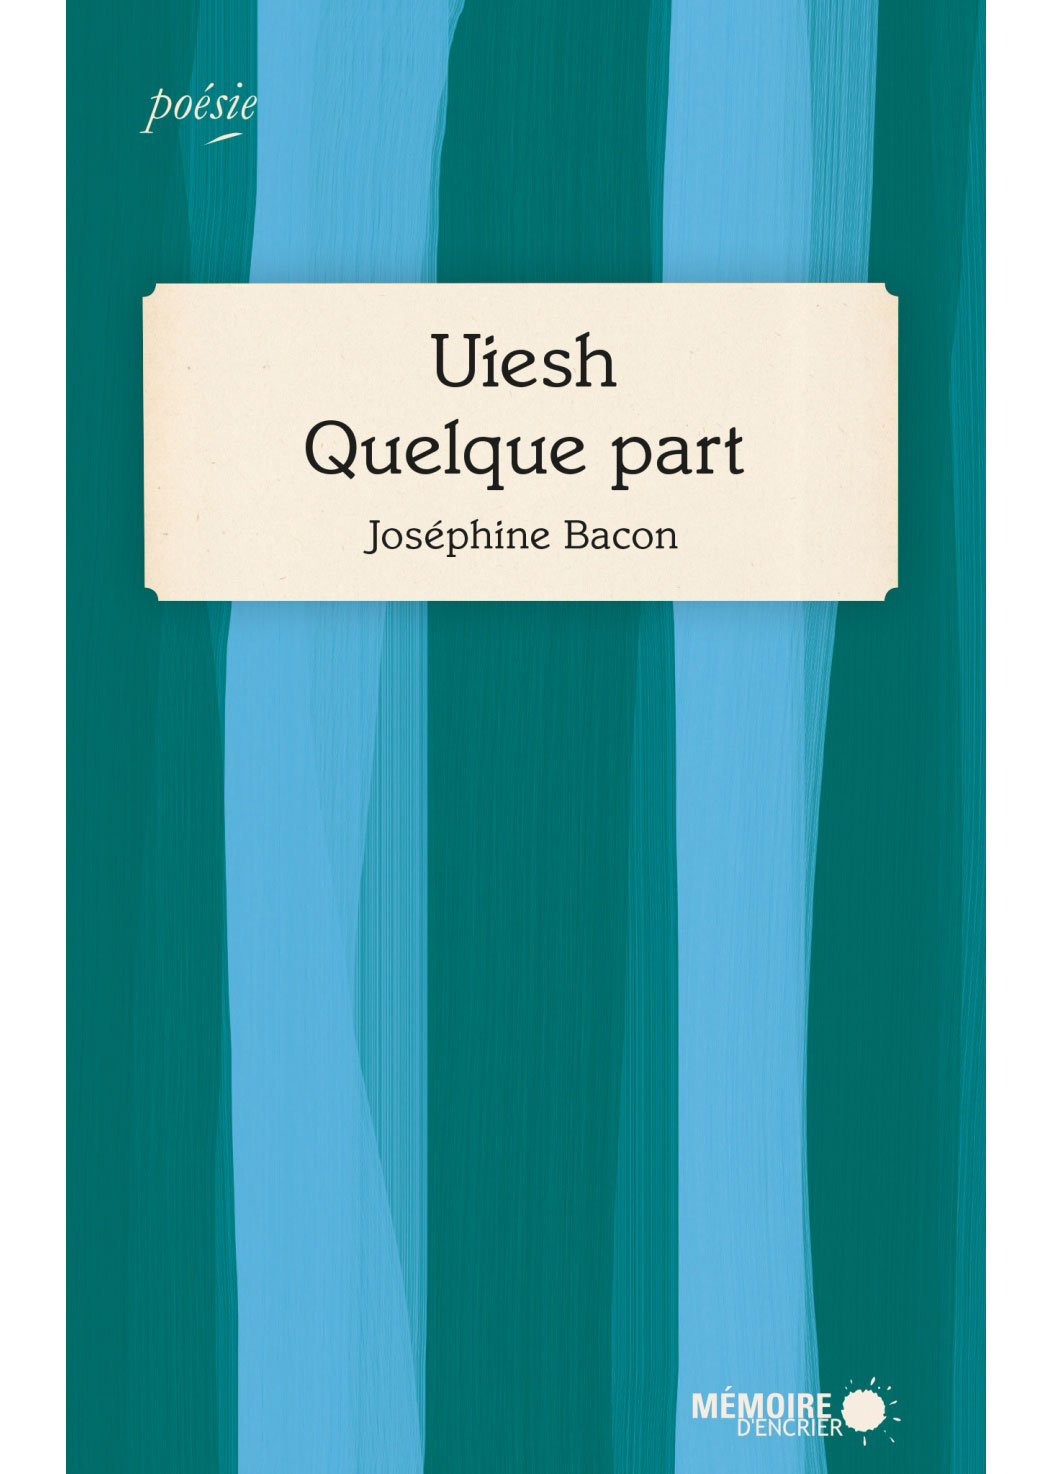 Recueil de poésie de Joséphine Bacon.